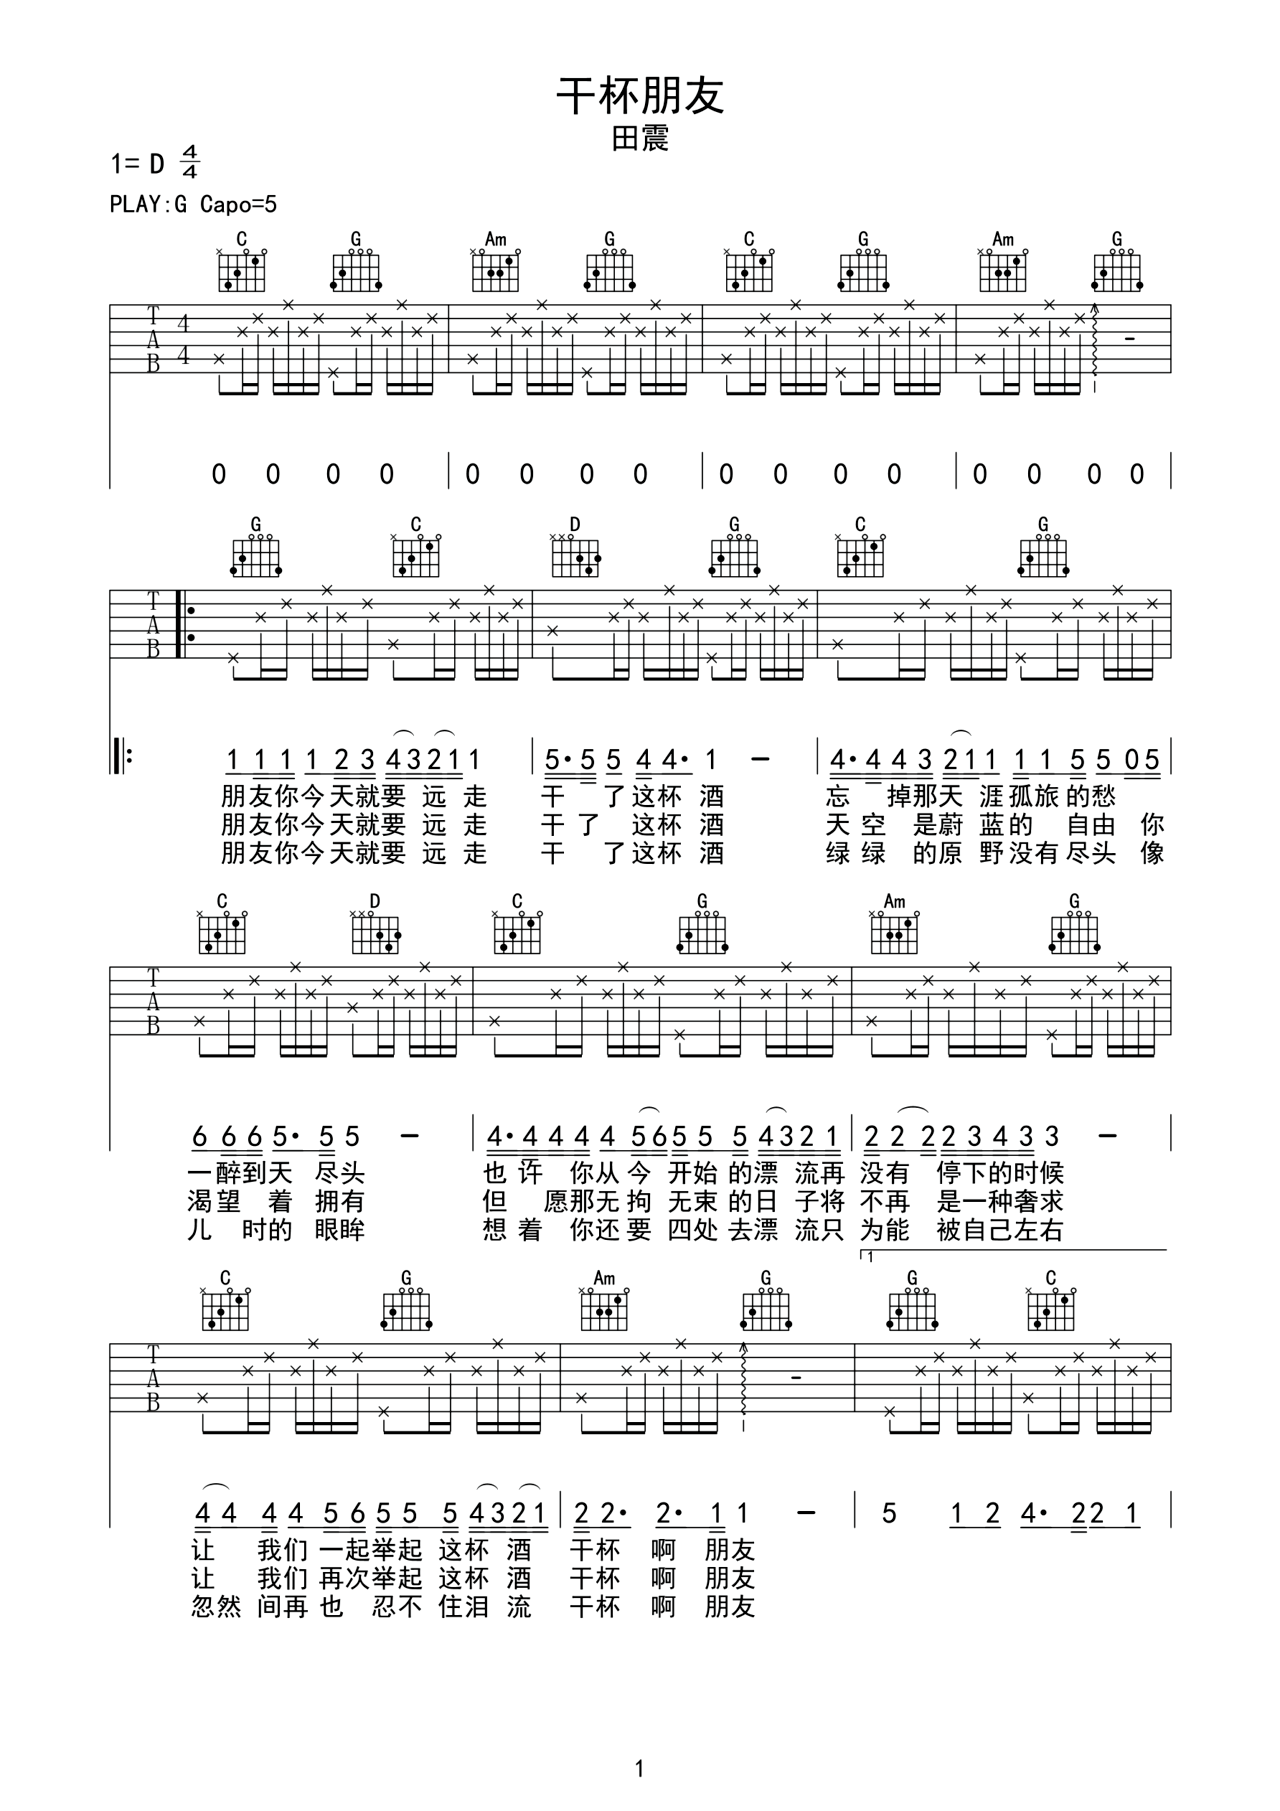 陶喆《普通朋友》吉他谱(F调)-Guitar Music Score - GTP吉他谱